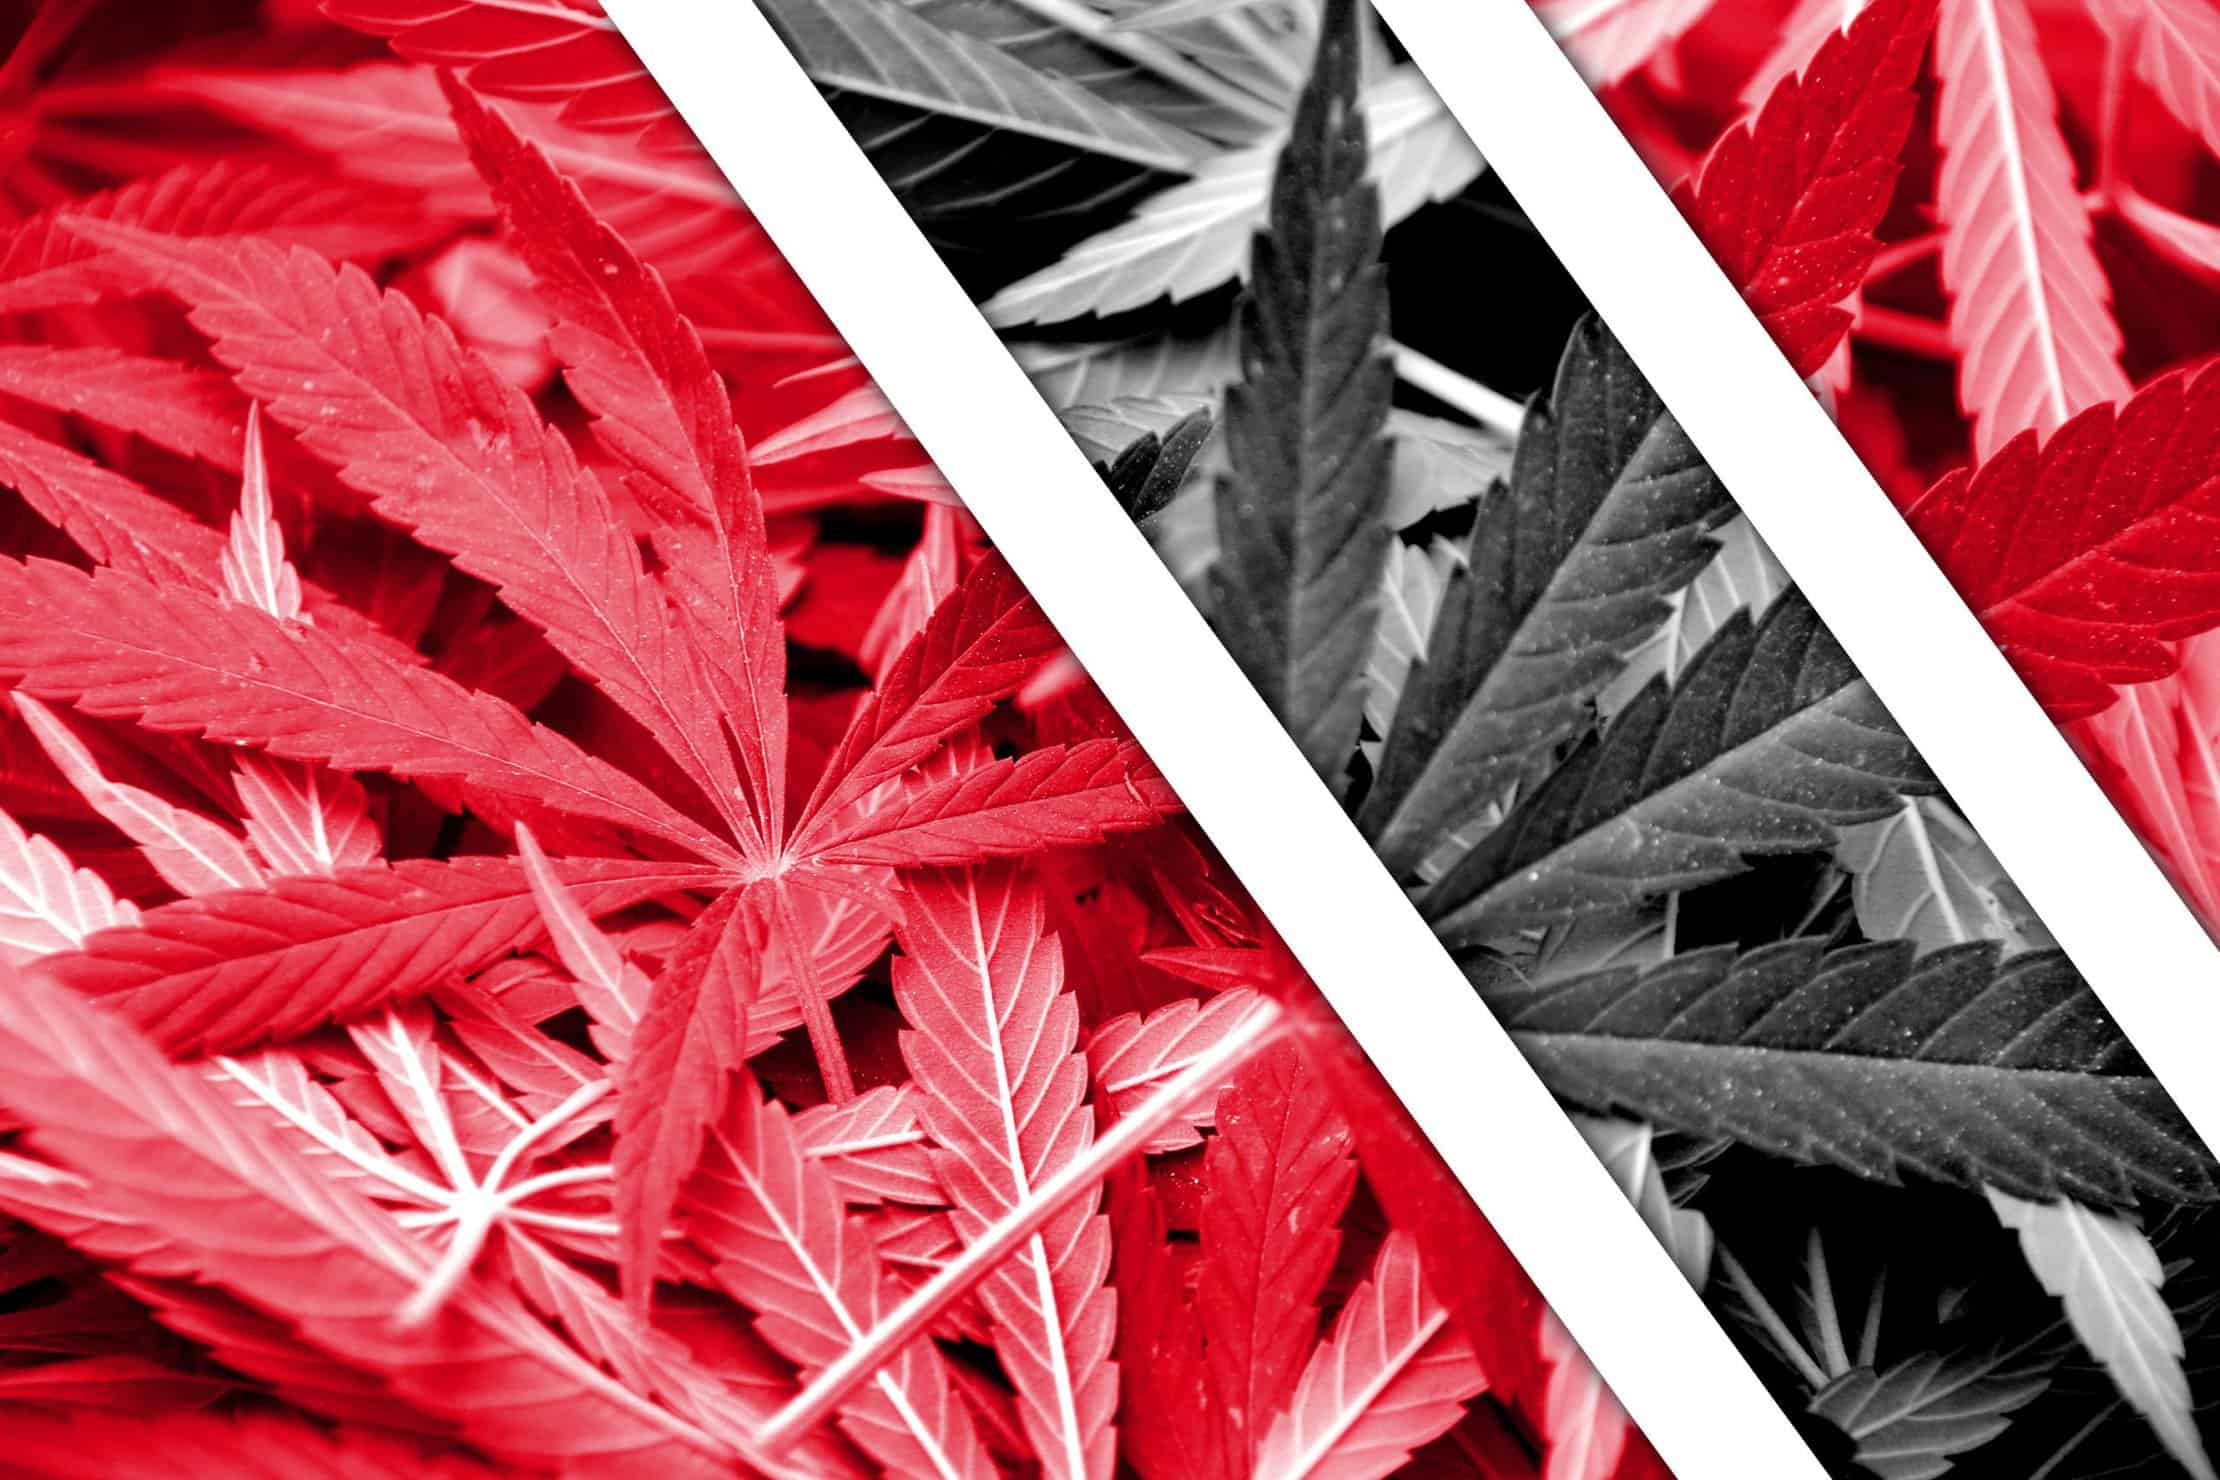 Caribbean Cannabis News in 2019